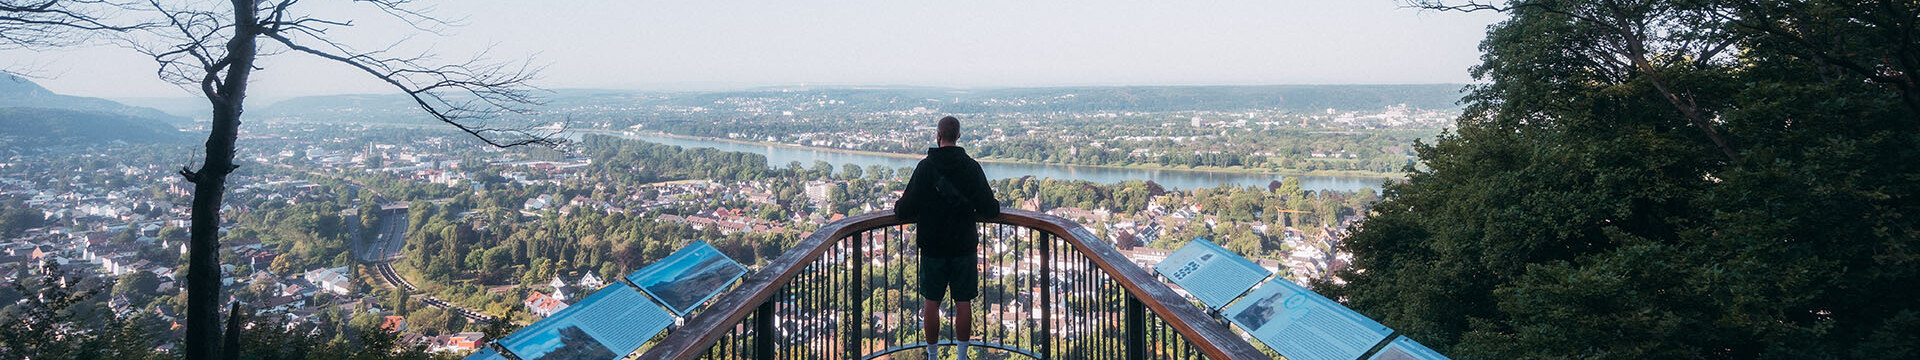 Blick über Bonn und den Rhein von der Aussichtsplattform Skywalk aus